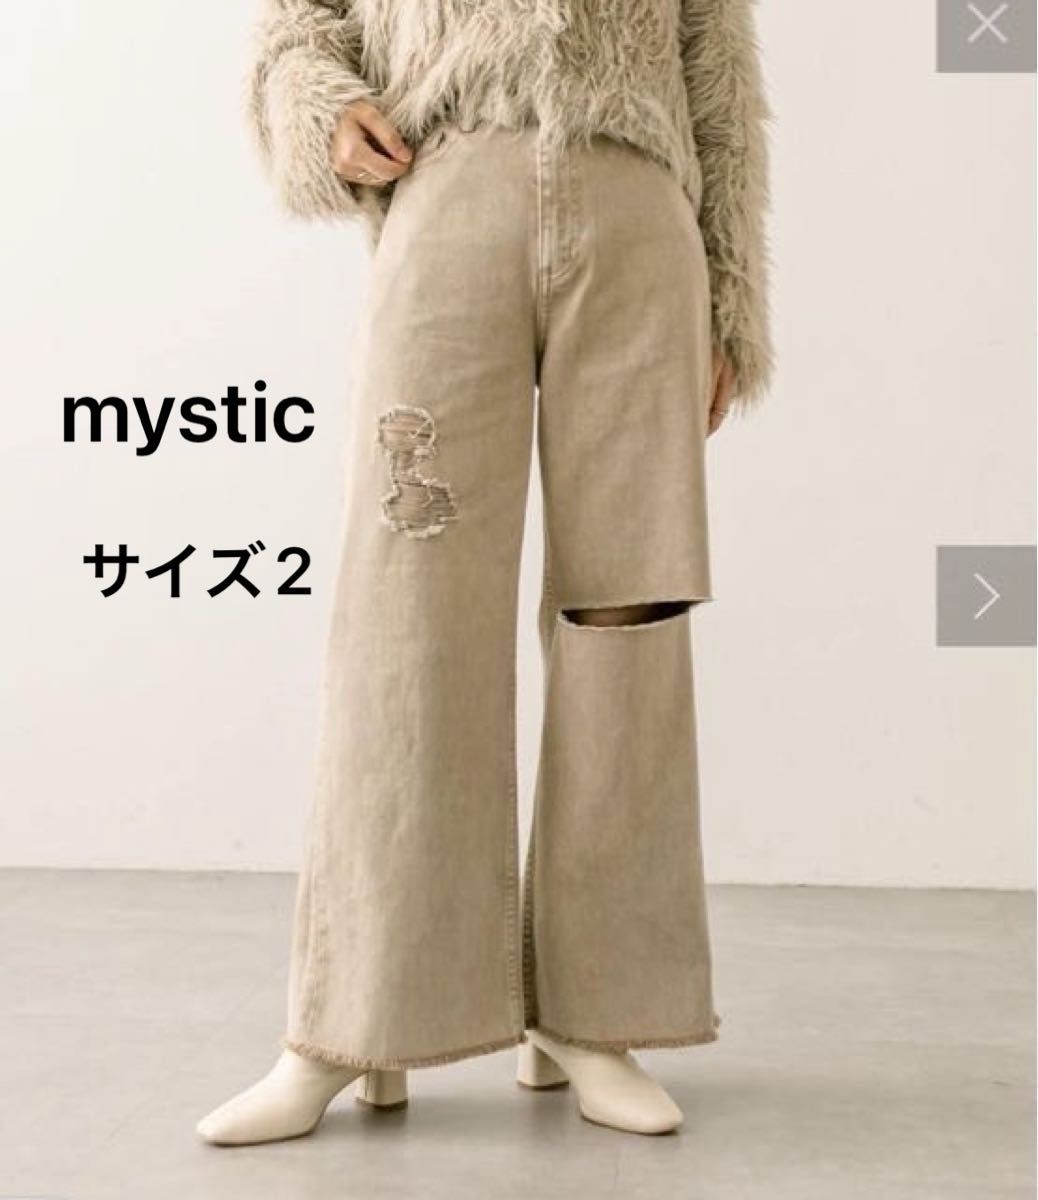 mystic(ミスティック)クラッシュデニムダメージジーンズワイドパンツベージュサイズ2Lレディース裾フレア脚長美脚大人カジュアル